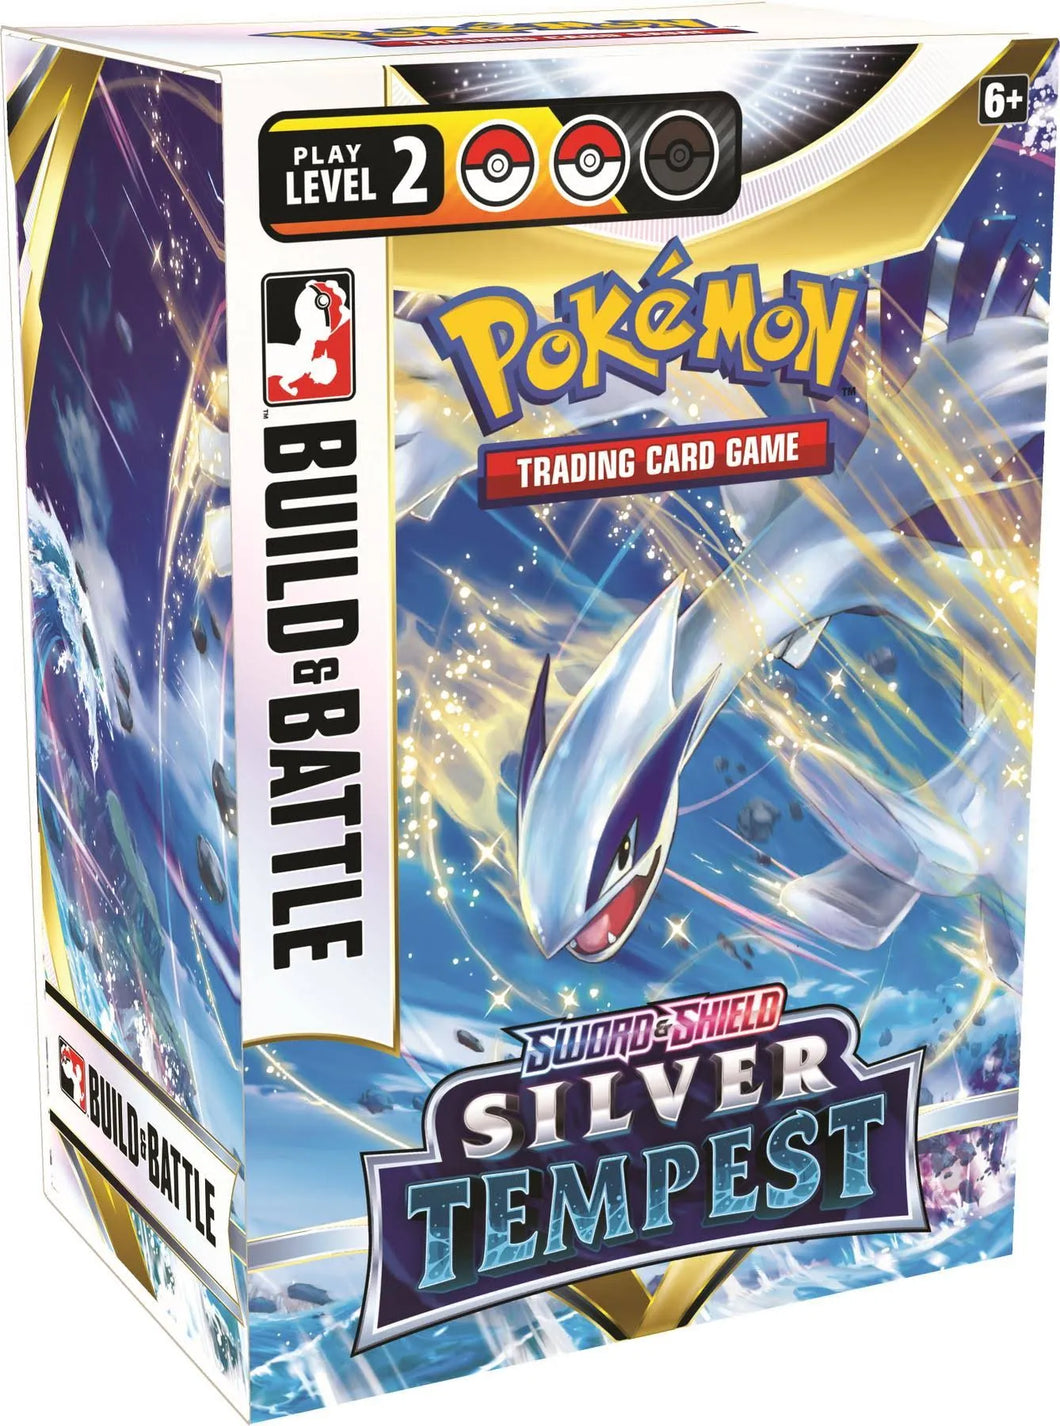 Pokémon silver tempest build and battle box